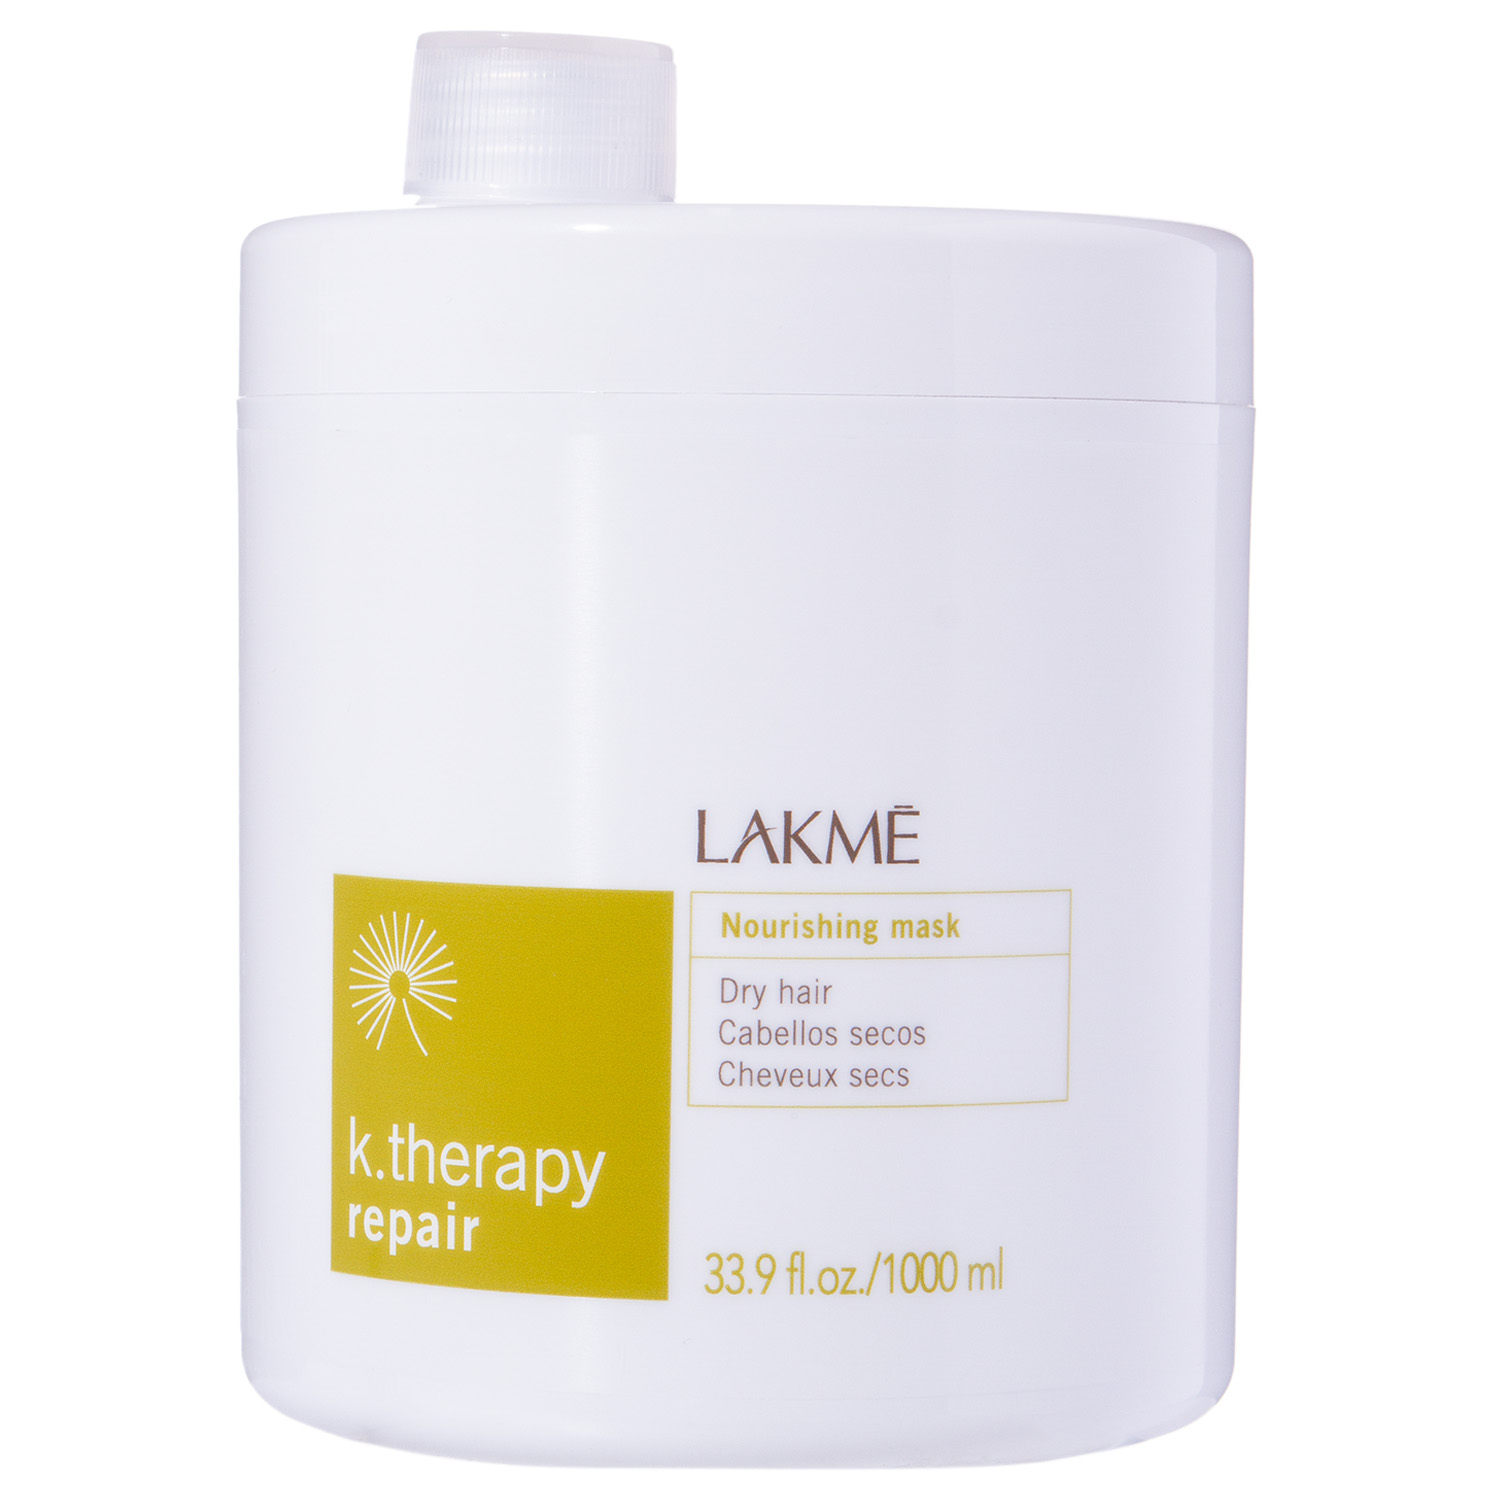 Lakme Маска питательная для сухих волос 1000 мл (Lakme, K.Therapy)